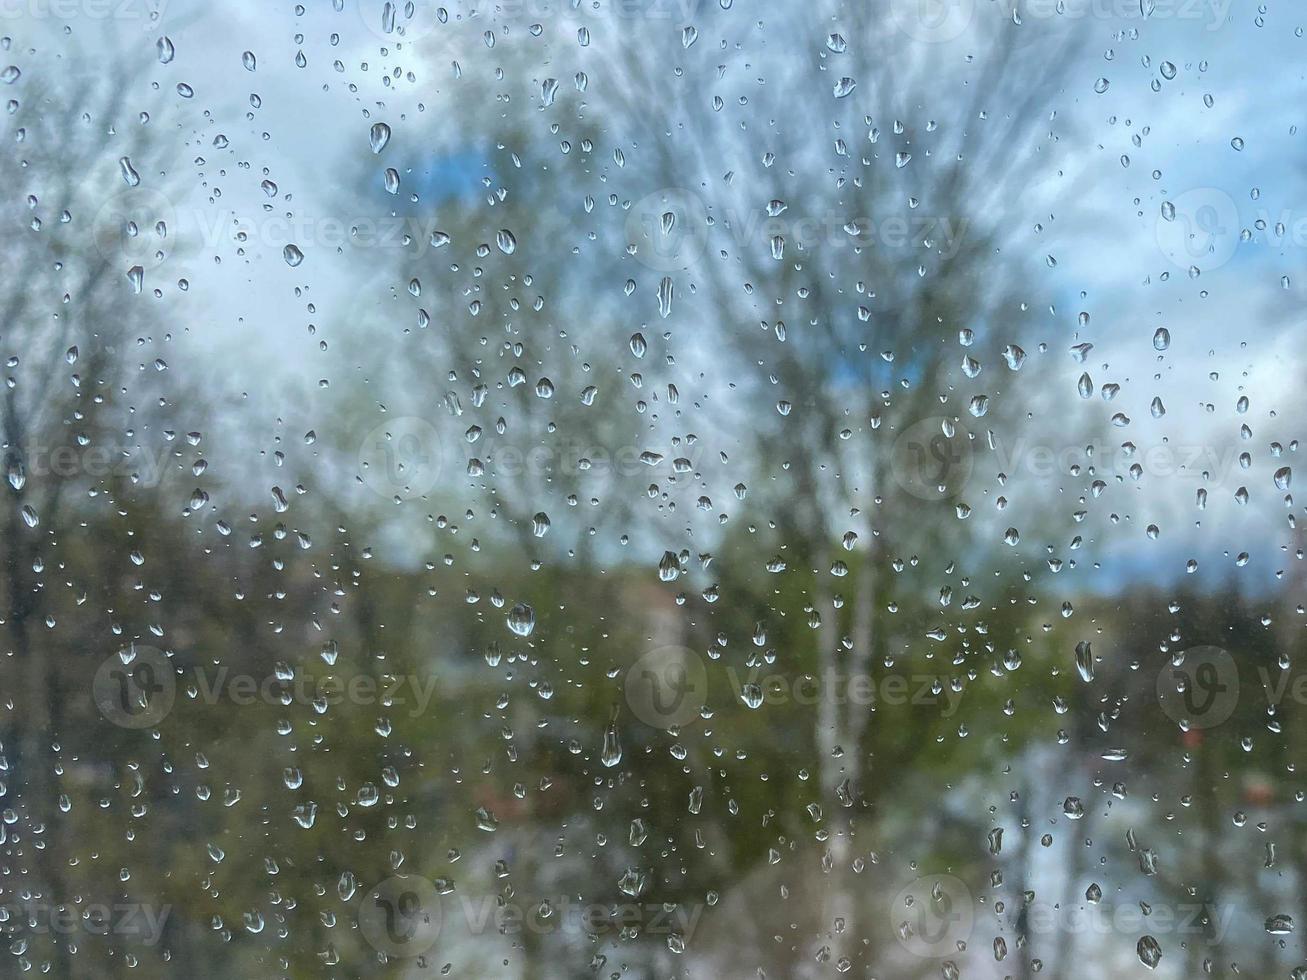 textura de superfície bonita de vidro transparente molhado em uma janela com gotas frias limpas depois da chuva. o fundo foto